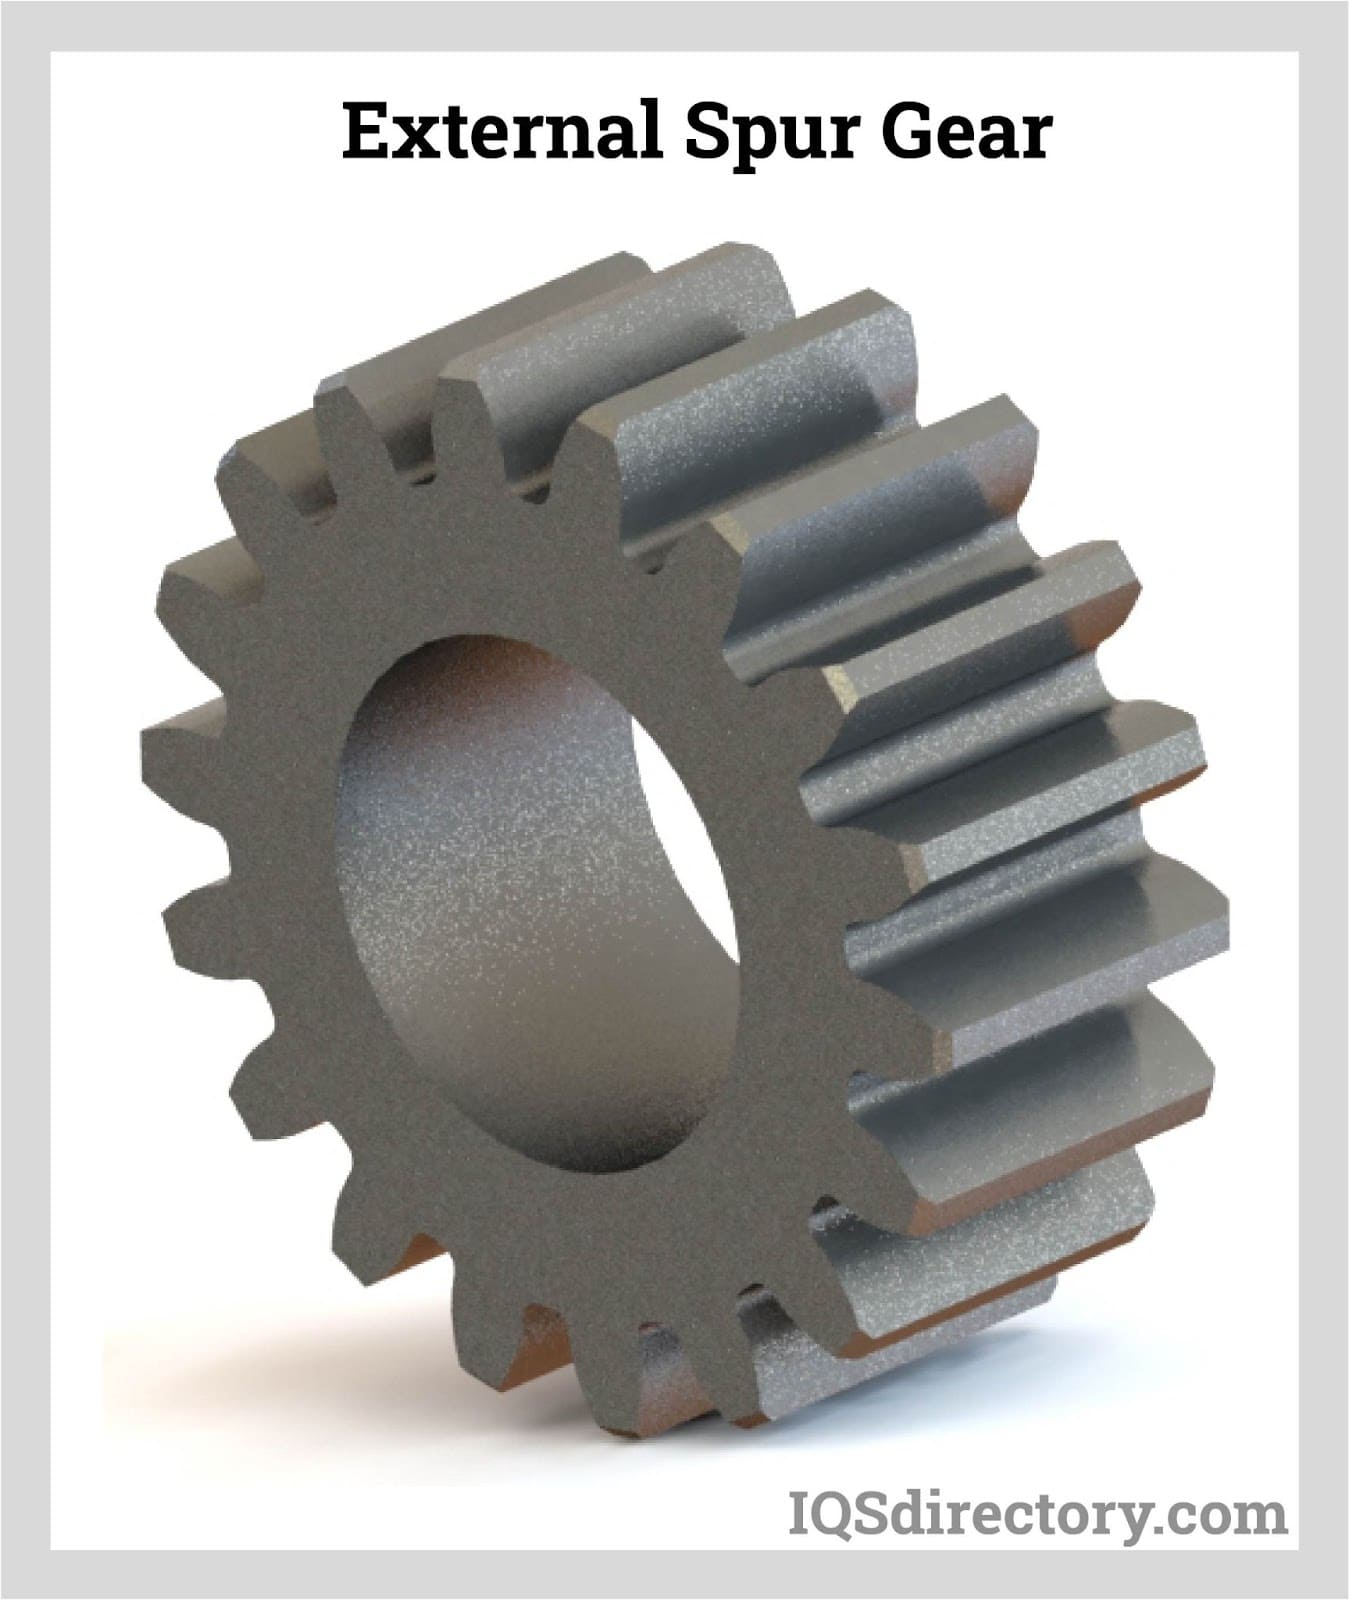 External Spur Gear